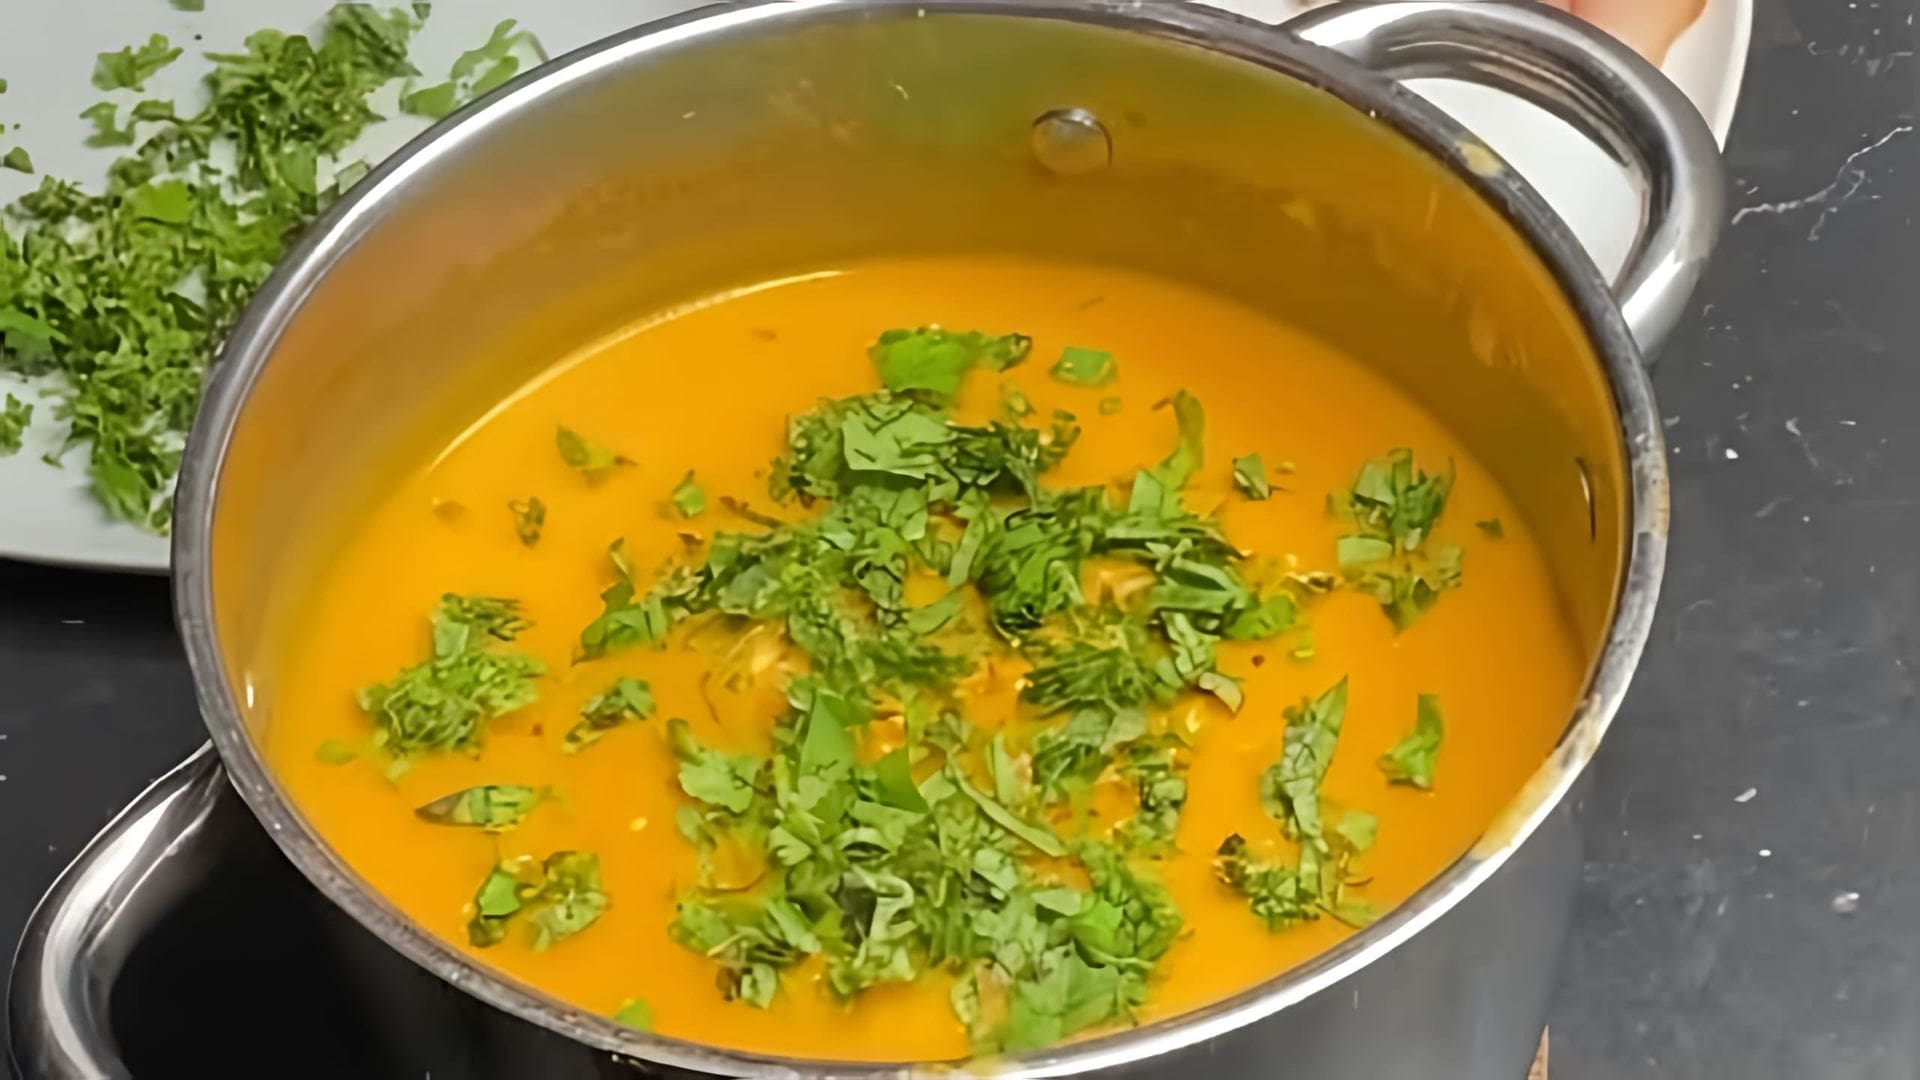 В этом видео мы видим, как готовится чечевичный суп